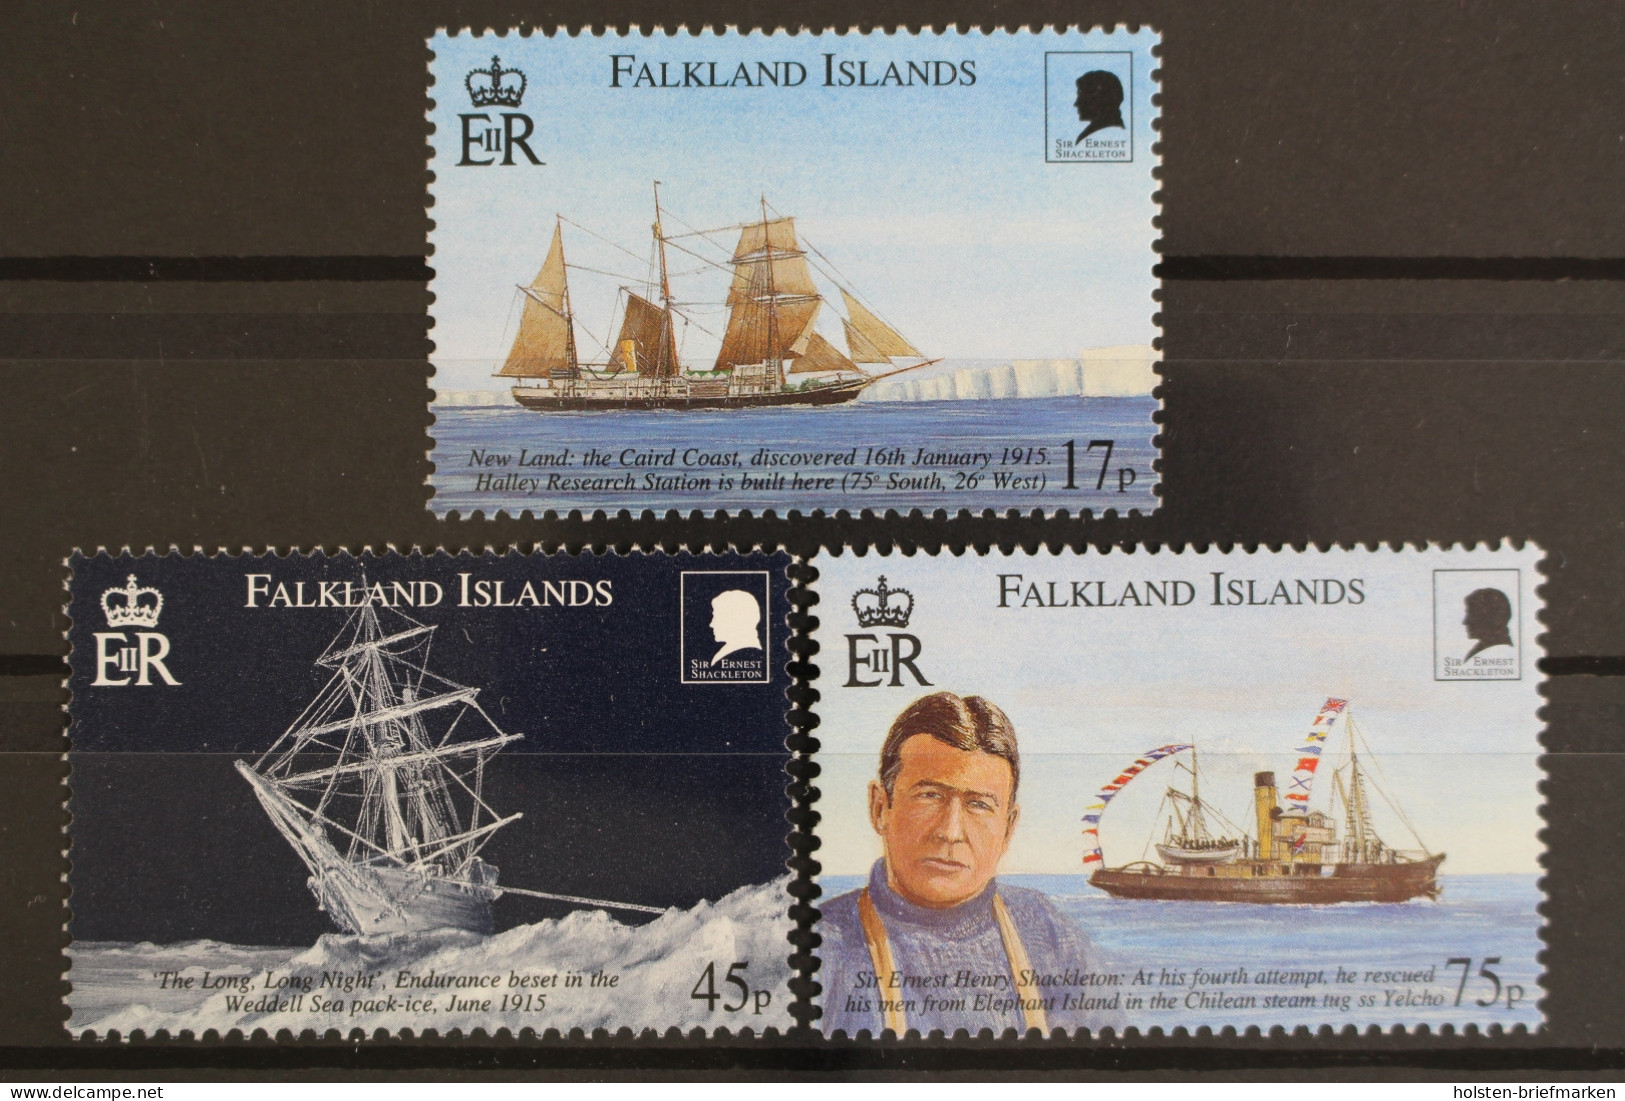 Falklandinseln, Schiffe, MiNr. 776-778, Postfrisch - Falklandinseln